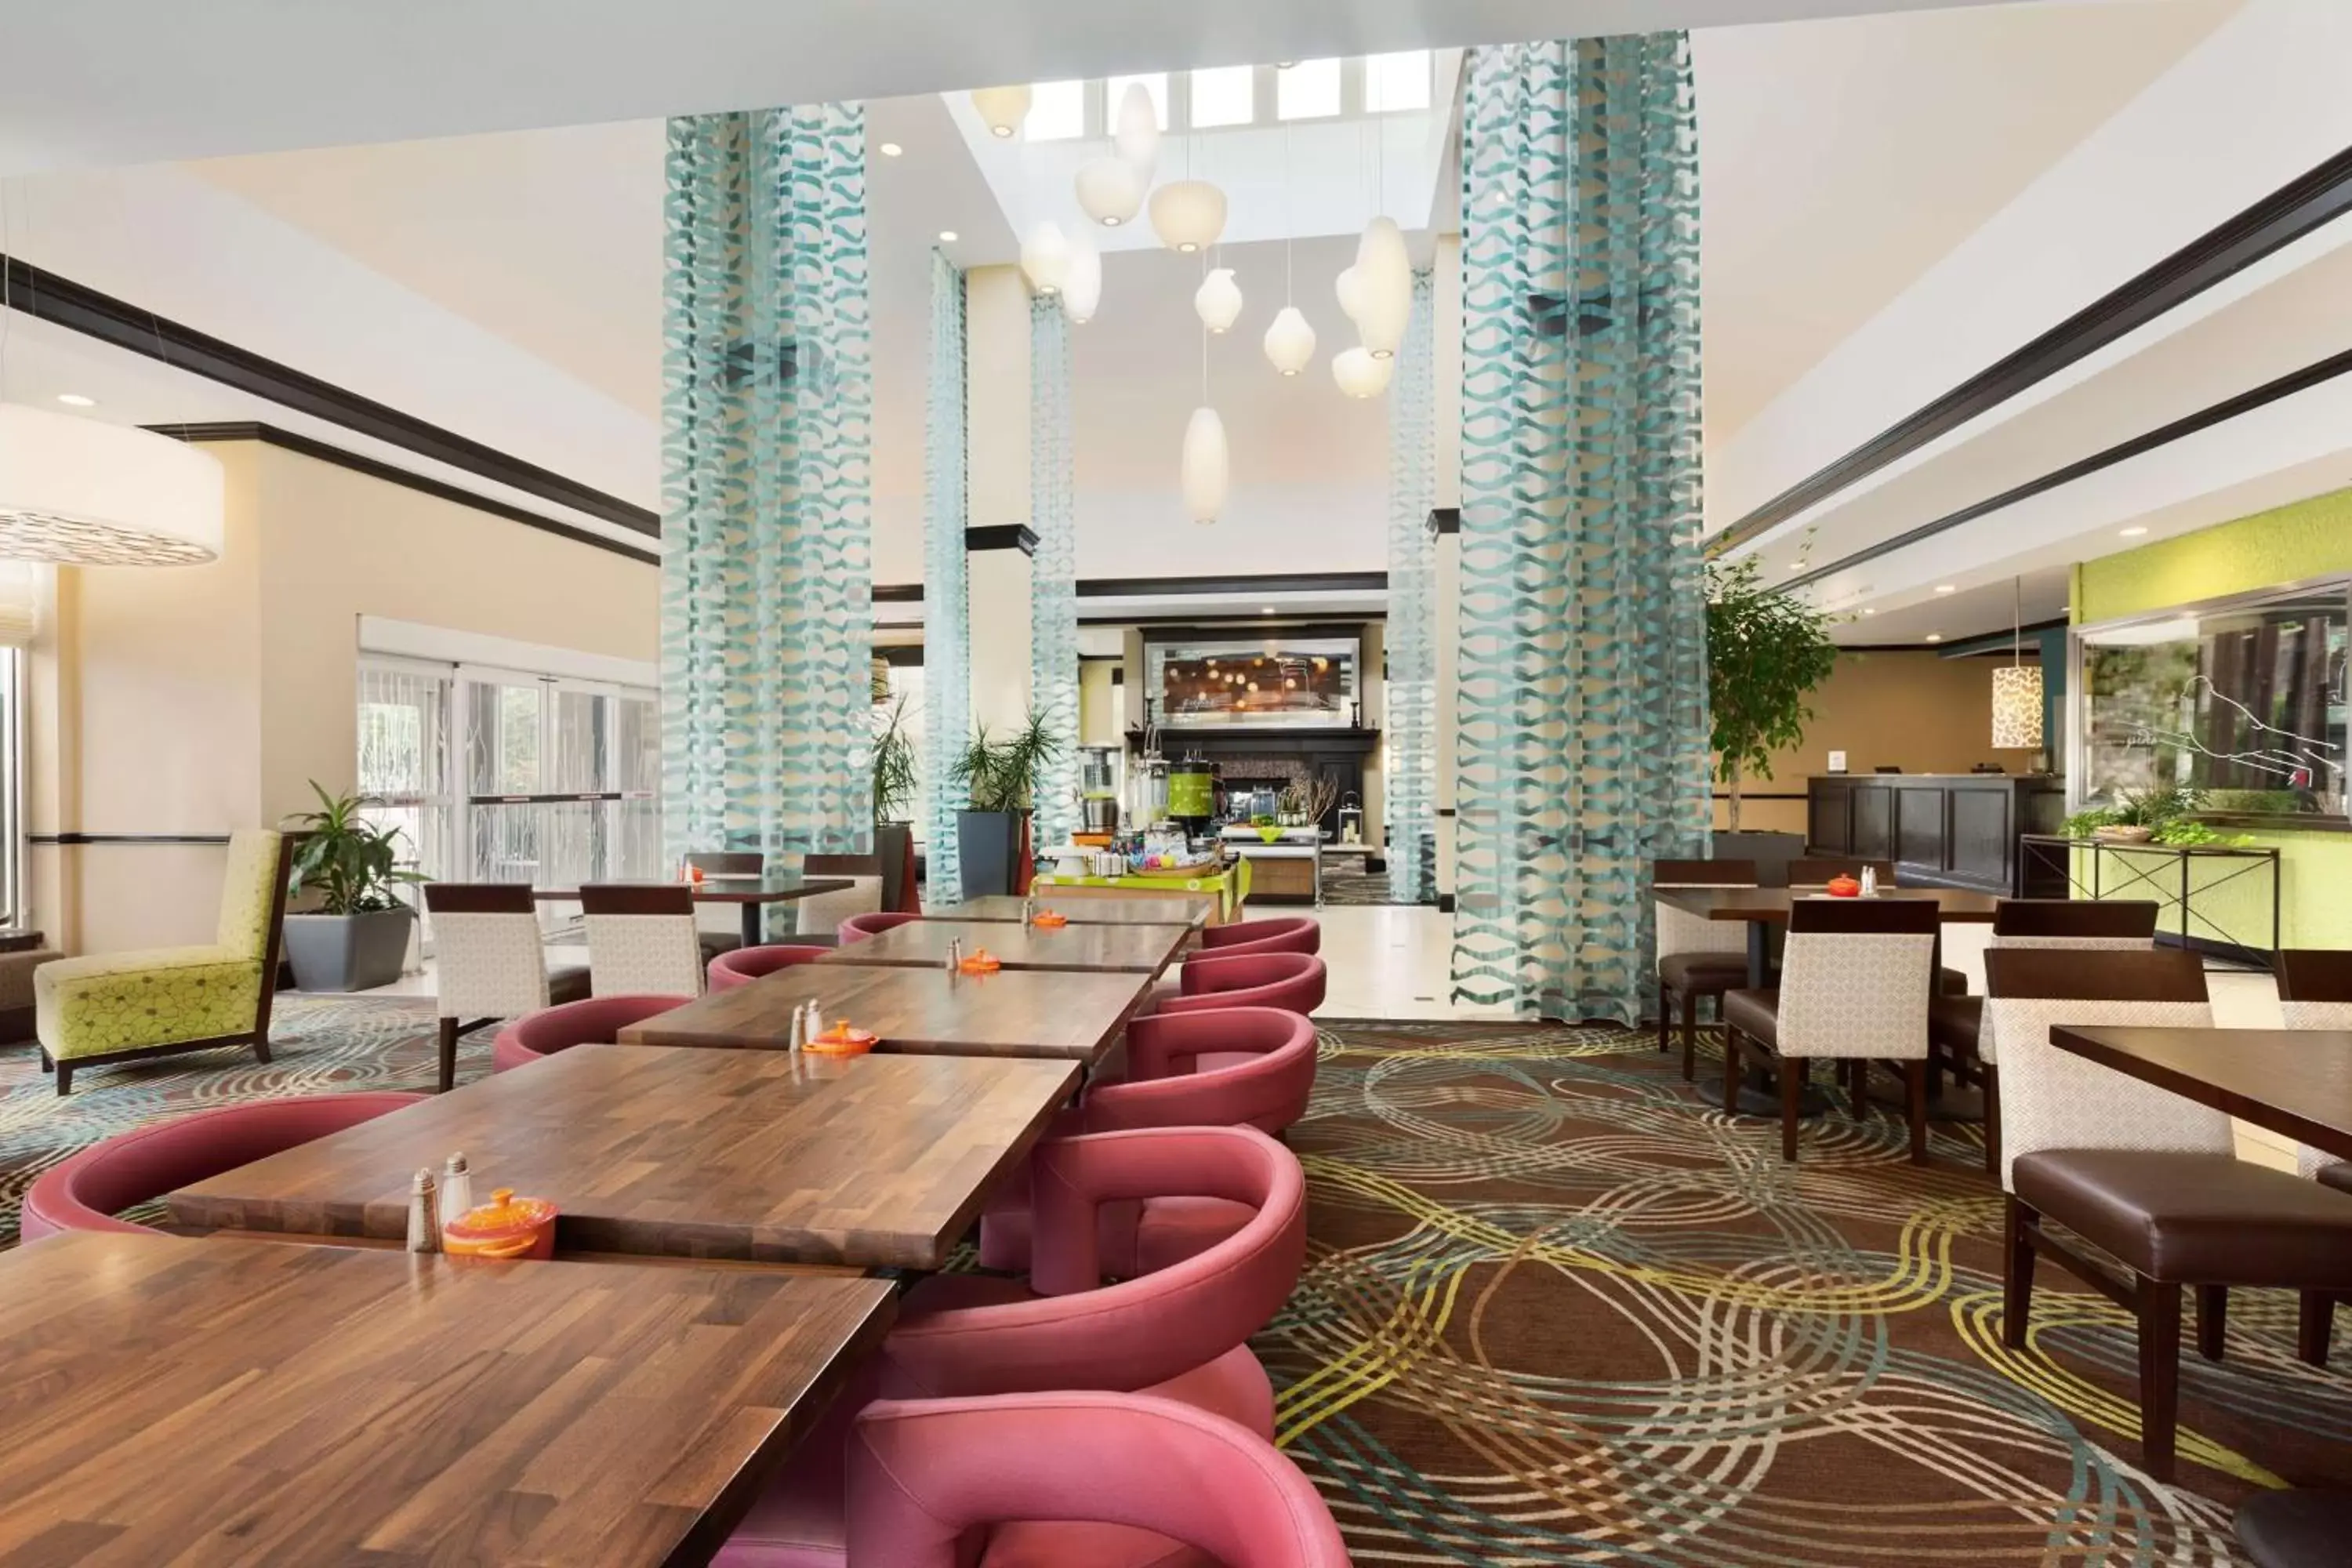 Restaurant/places to eat, Lounge/Bar in Hilton Garden Inn Abilene